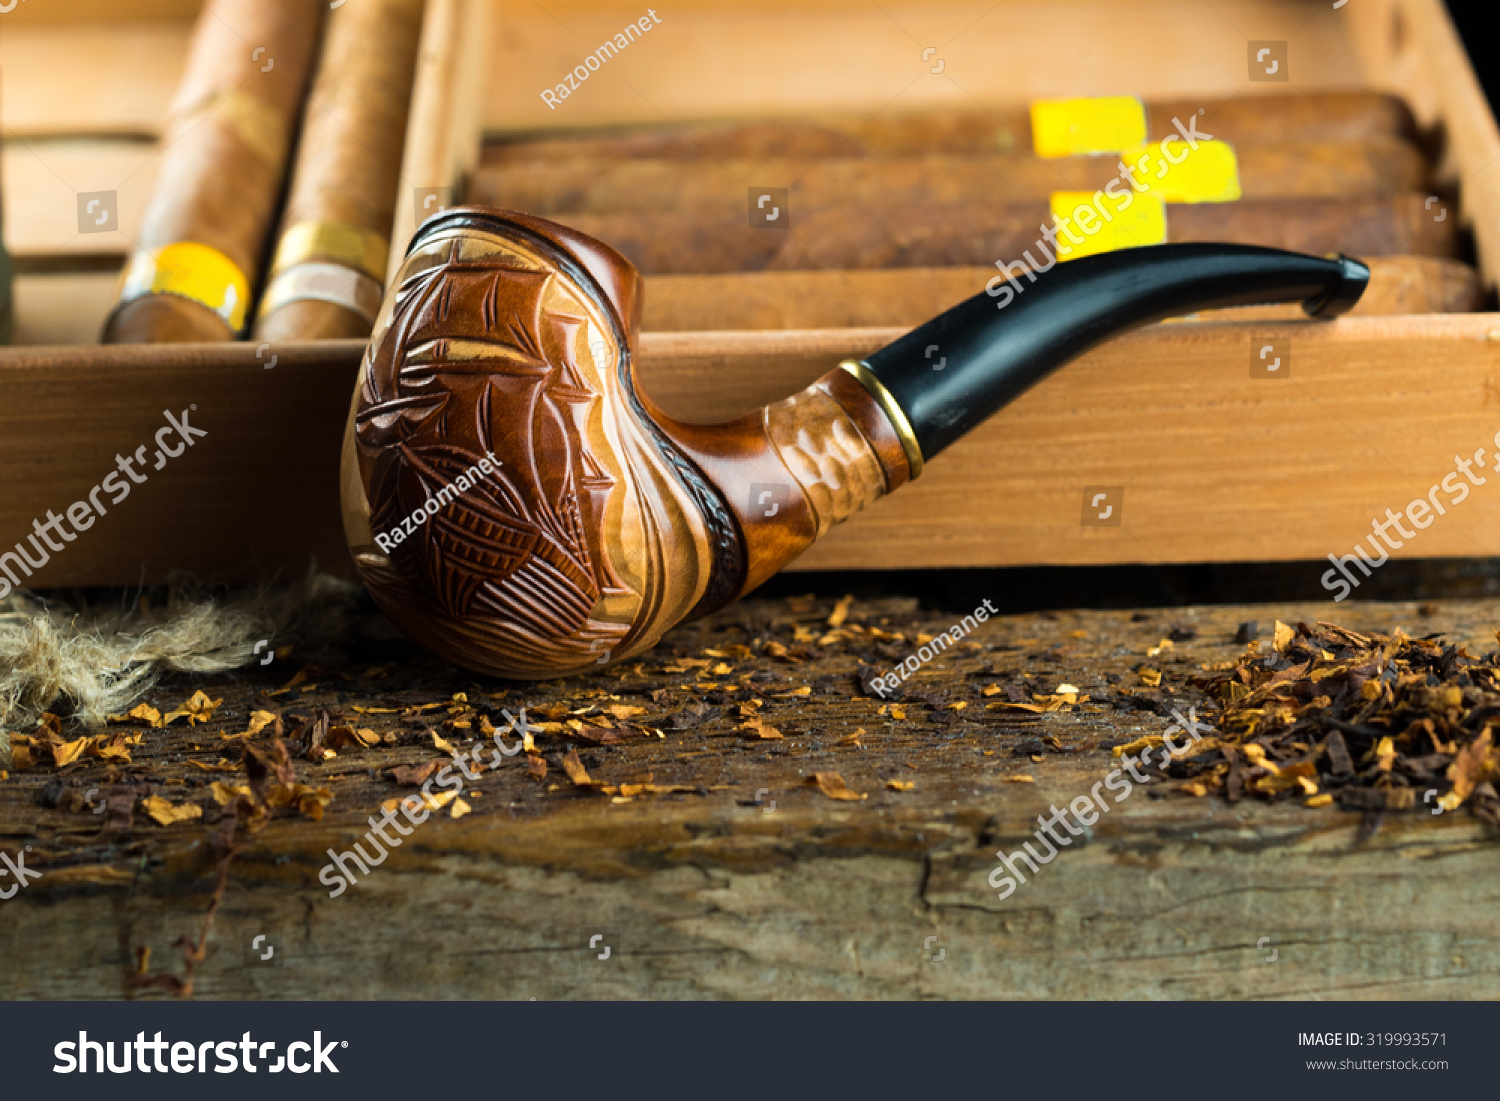 13 378 Imágenes De Smoking Cigar Pipe Imágenes Fotos Y Vectores De Stock Shutterstock